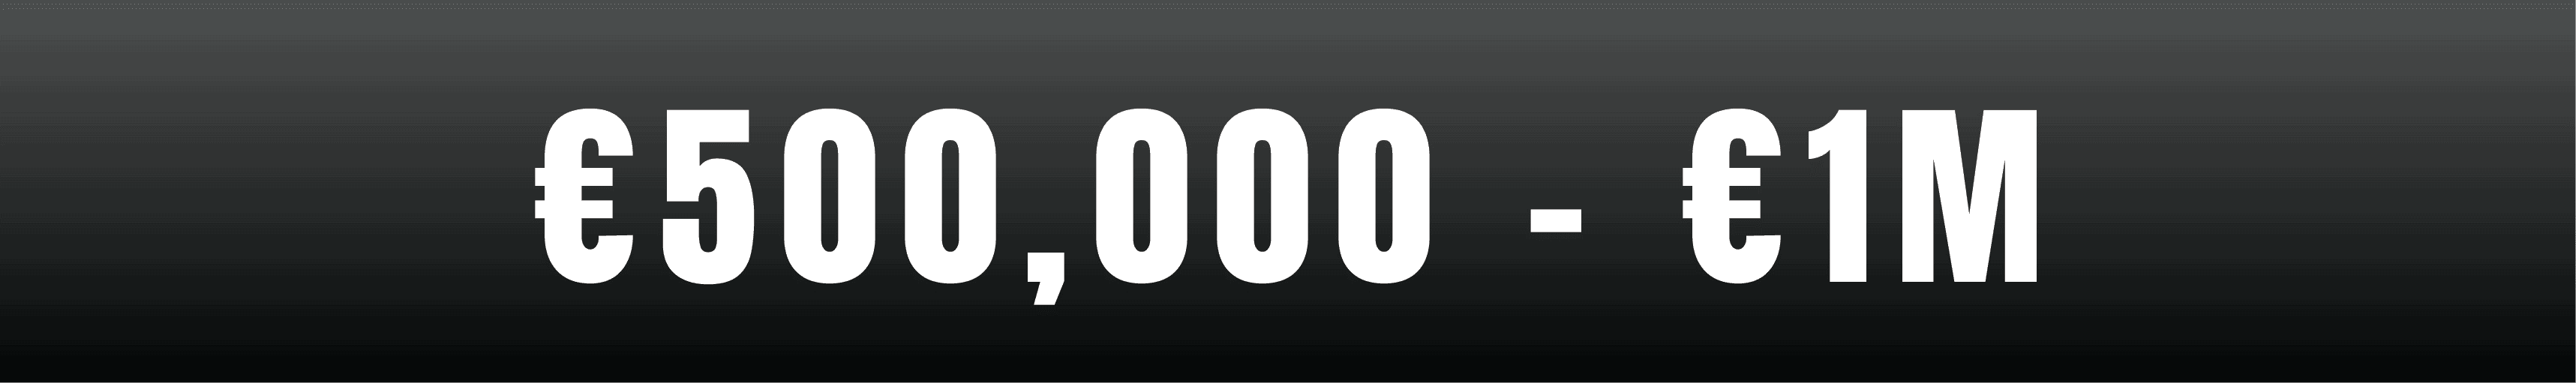 500,000-1M